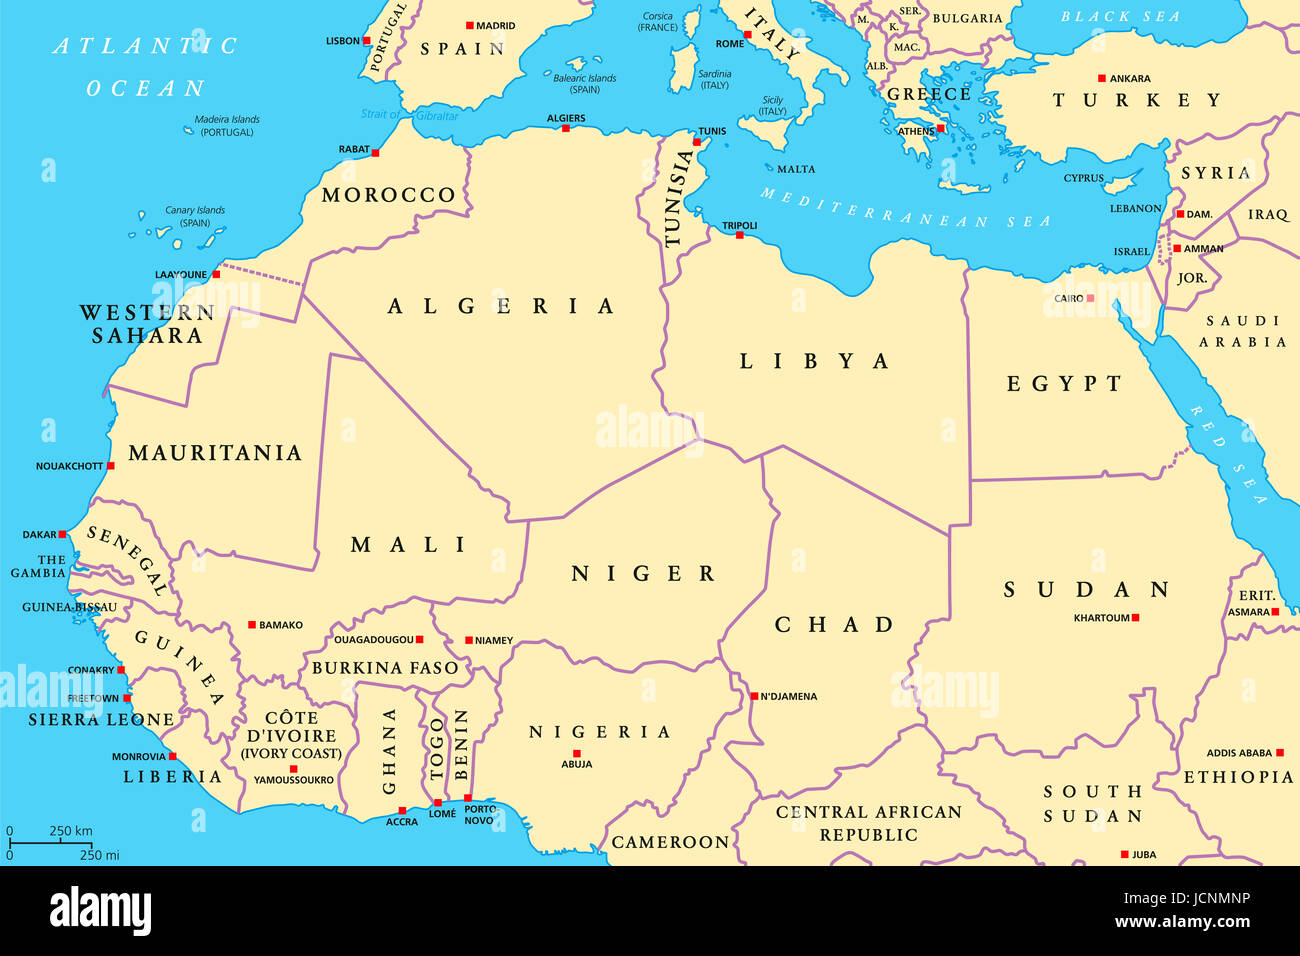 Nordafrika Ländern politische Karte mit Hauptstädten und Grenzen. Von der atlantischen Küste von Marokko bis Ägypten und am Roten Meer. Maghreb. Stockfoto